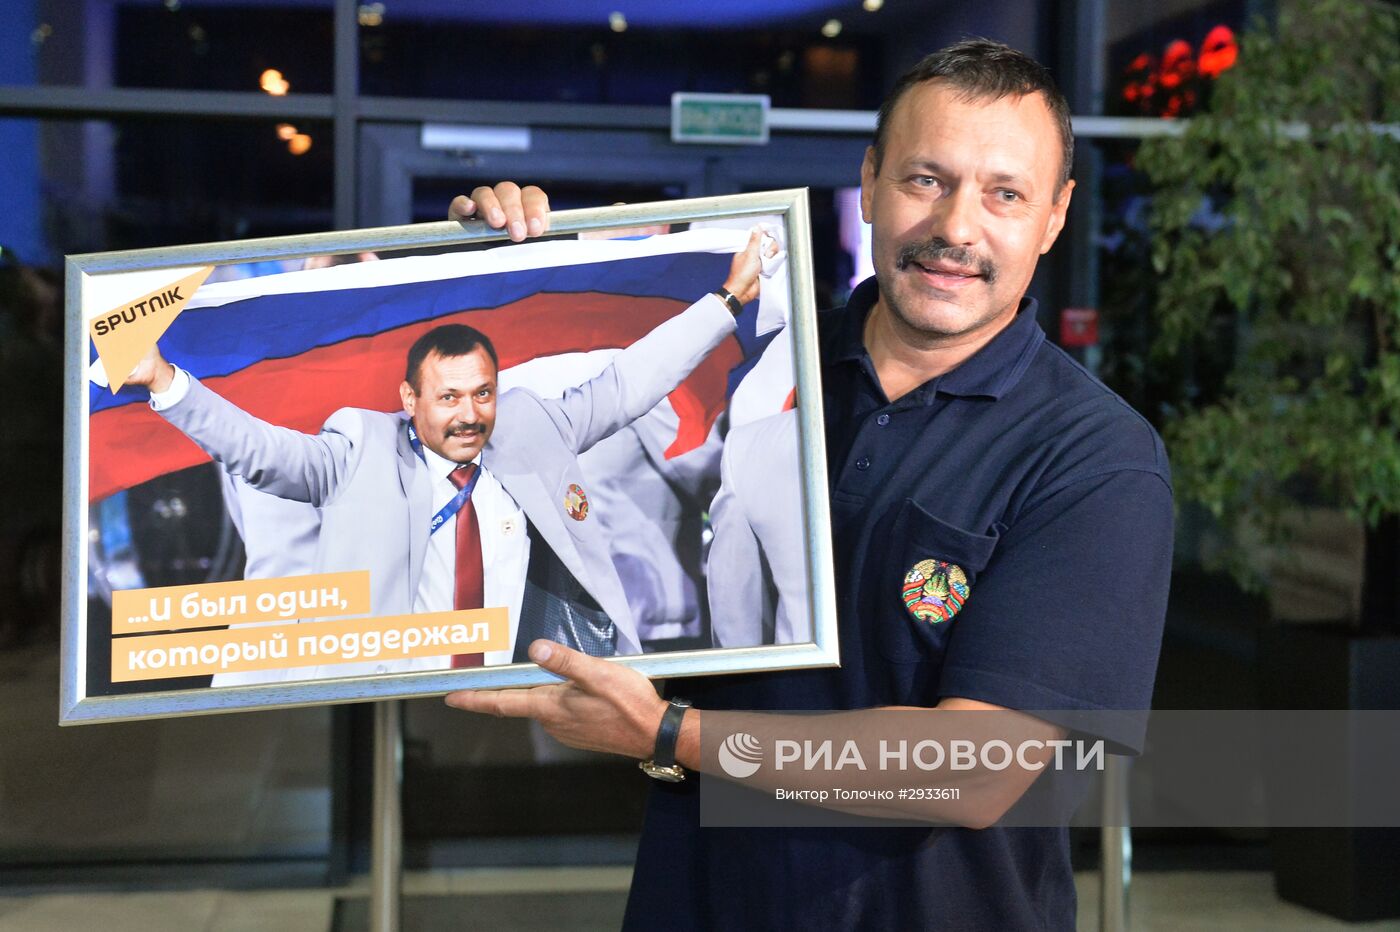 Член белорусской сборной А. Фомочкин, вынесший на открытии Паралимпиады в Рио-де-Жанейро флаг России, прилетел в Минск